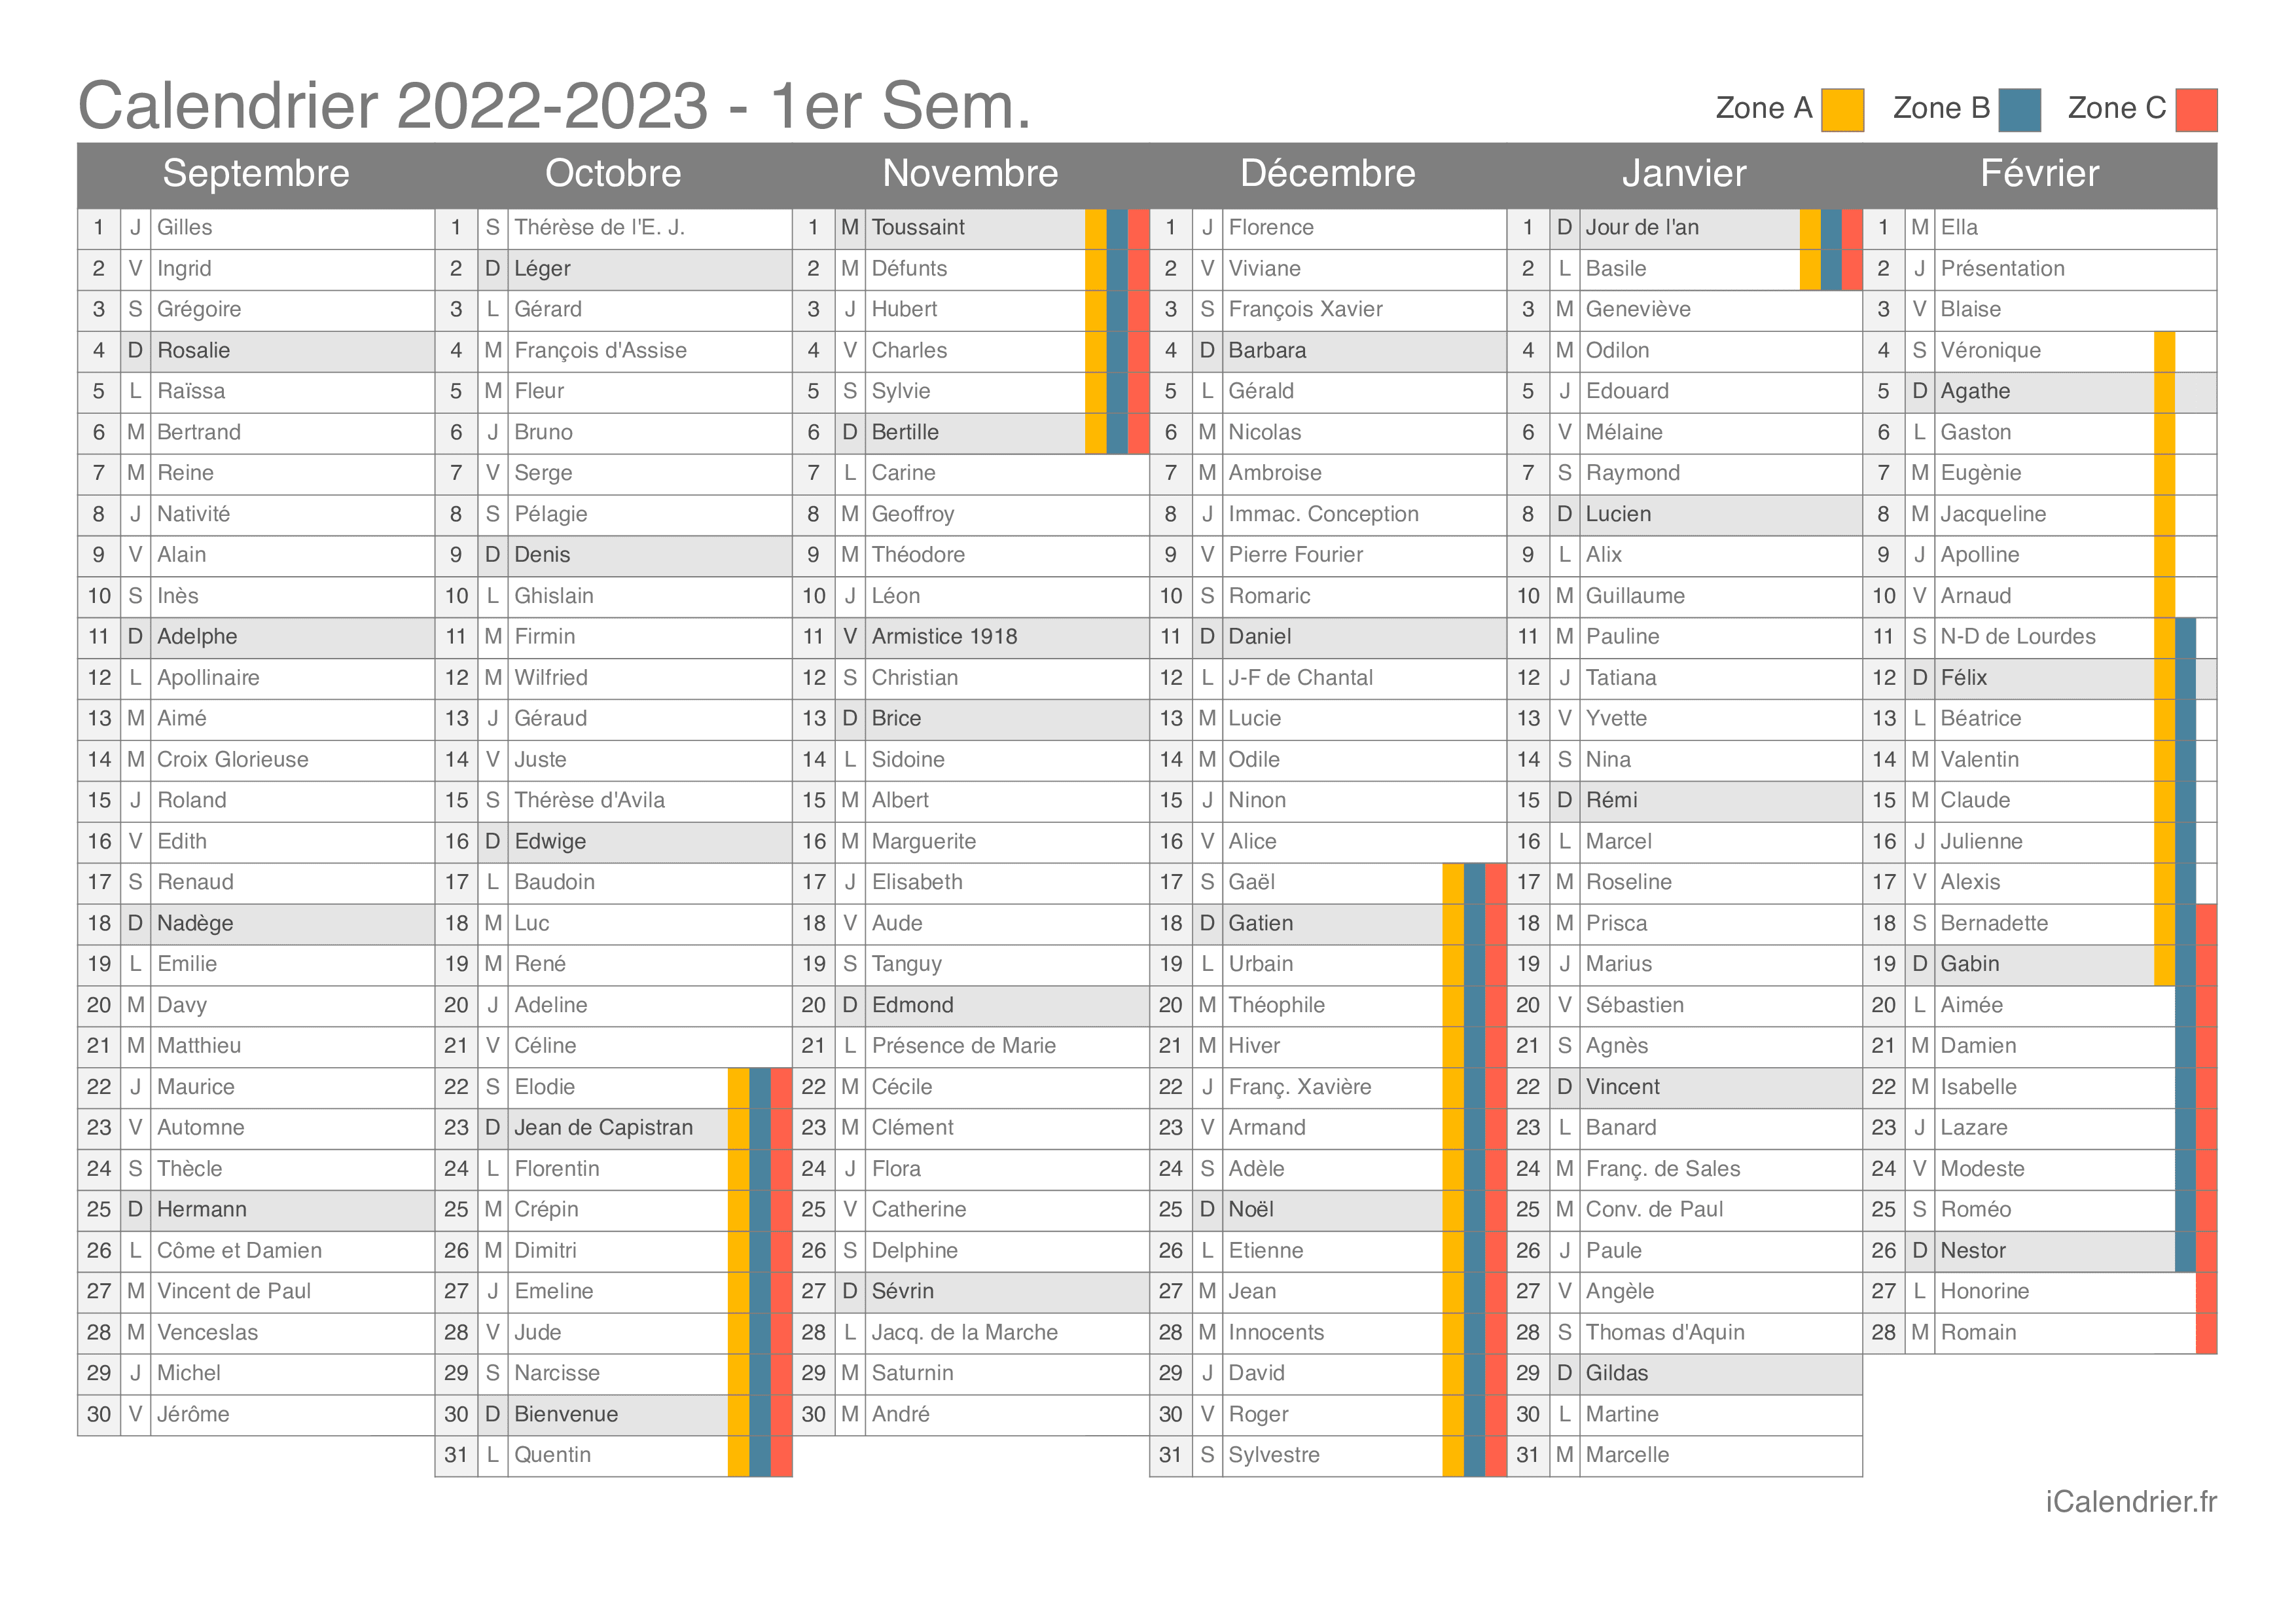 Vacances Scolaires 2022 2023 Dates Et Calendrier Icalendrier